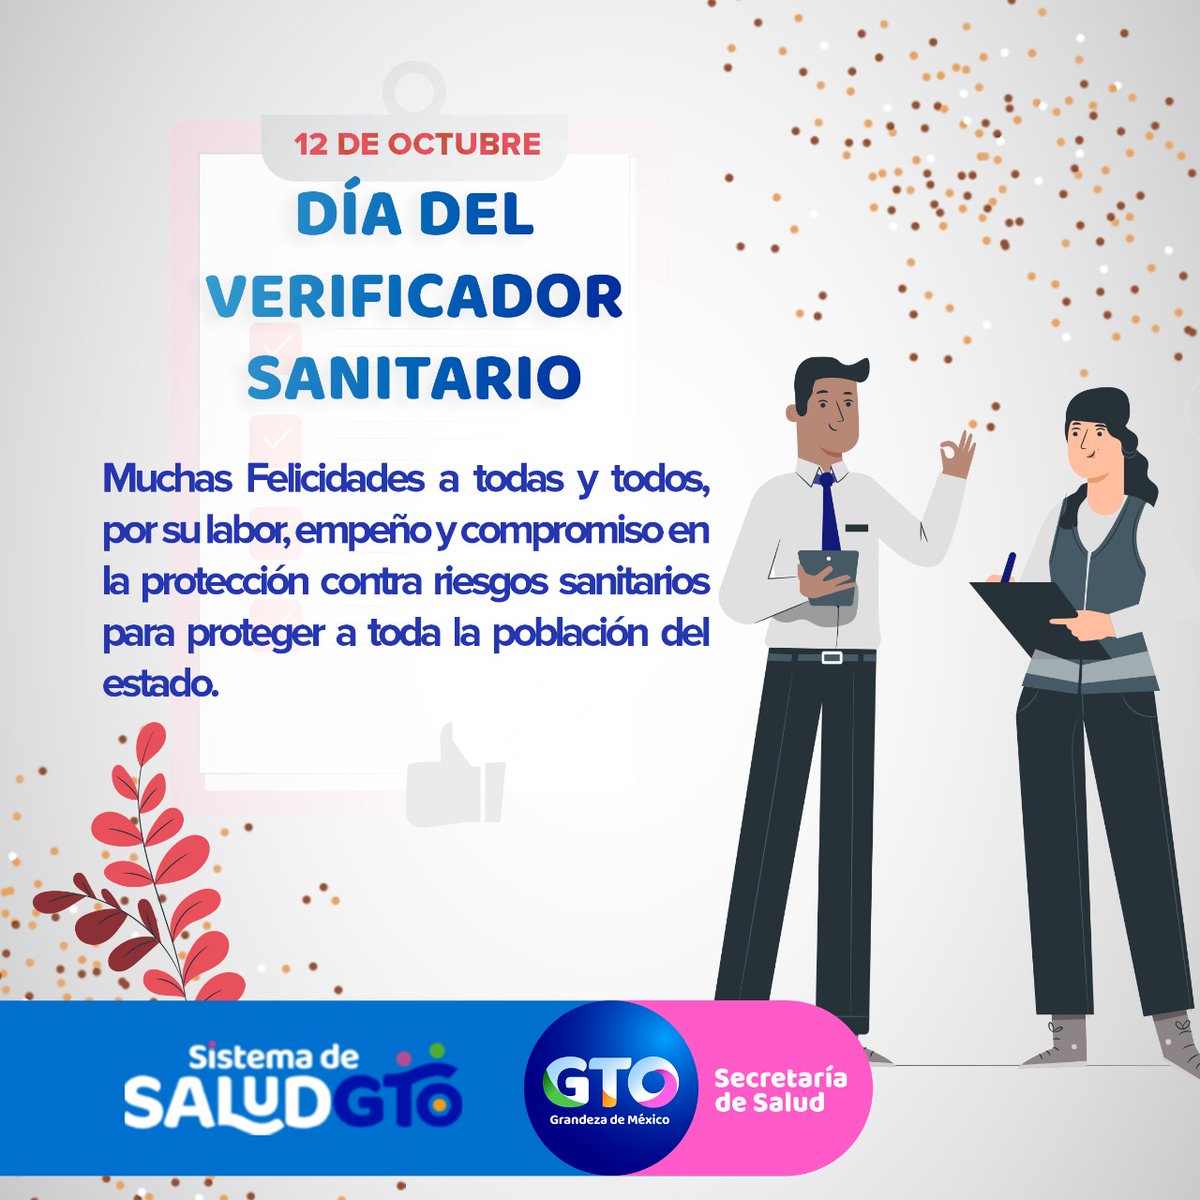 Hoy felicito ampliamente al Dr. Luis Carlos Zuñiga Durán, director general de protección contra riesgos sanitarios de Guanajuato, y a su ejército, ya que han salvaguardado la salud de los guanajuatenses, antes y durante la #epidemia de #coronavirus ¡Muchas felicidades en su día!